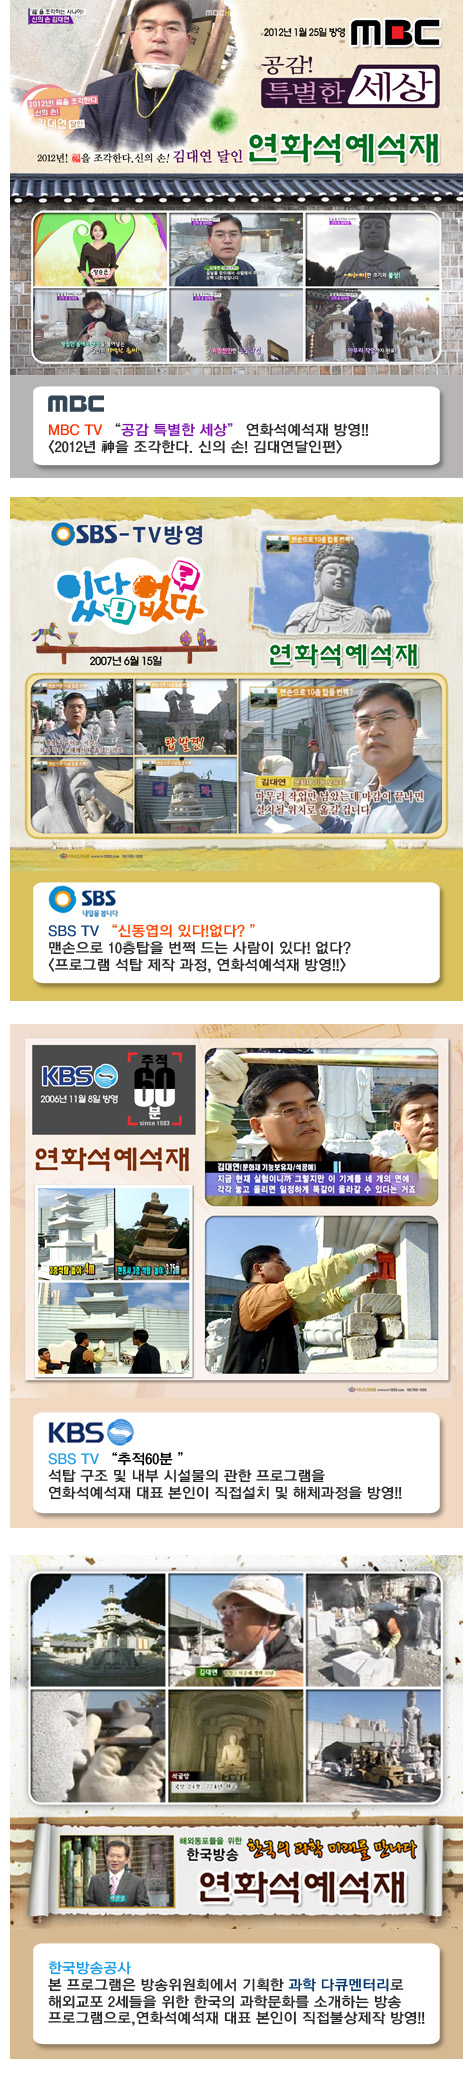 4사 방송소개